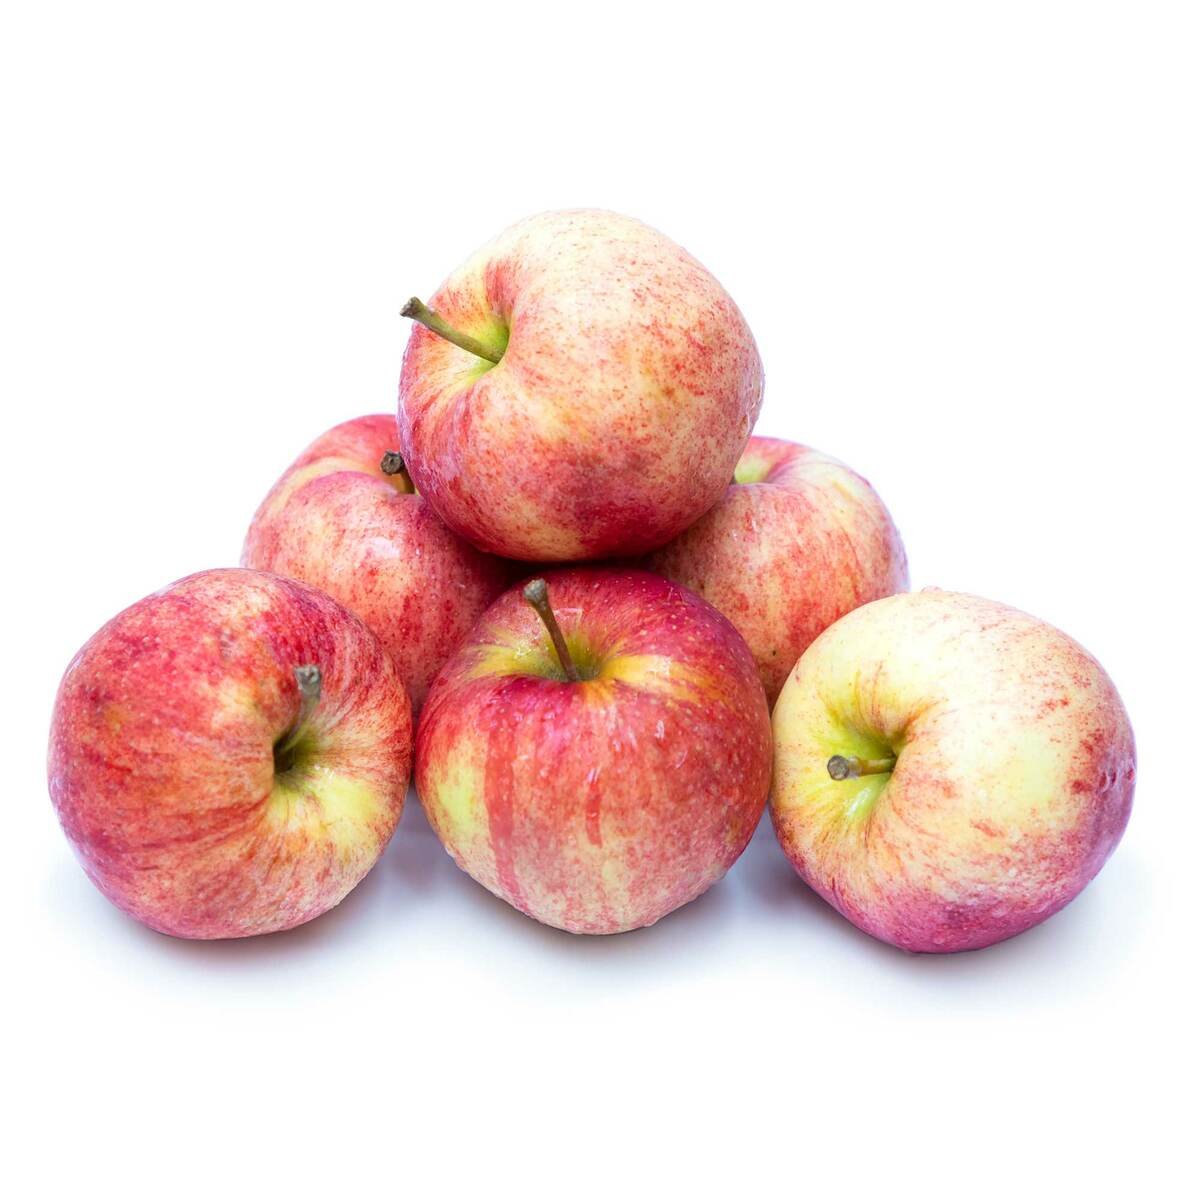 Buy Apple Royal Gala Poland 6 pcs Online at Best Price | Apples | Lulu UAE in UAE